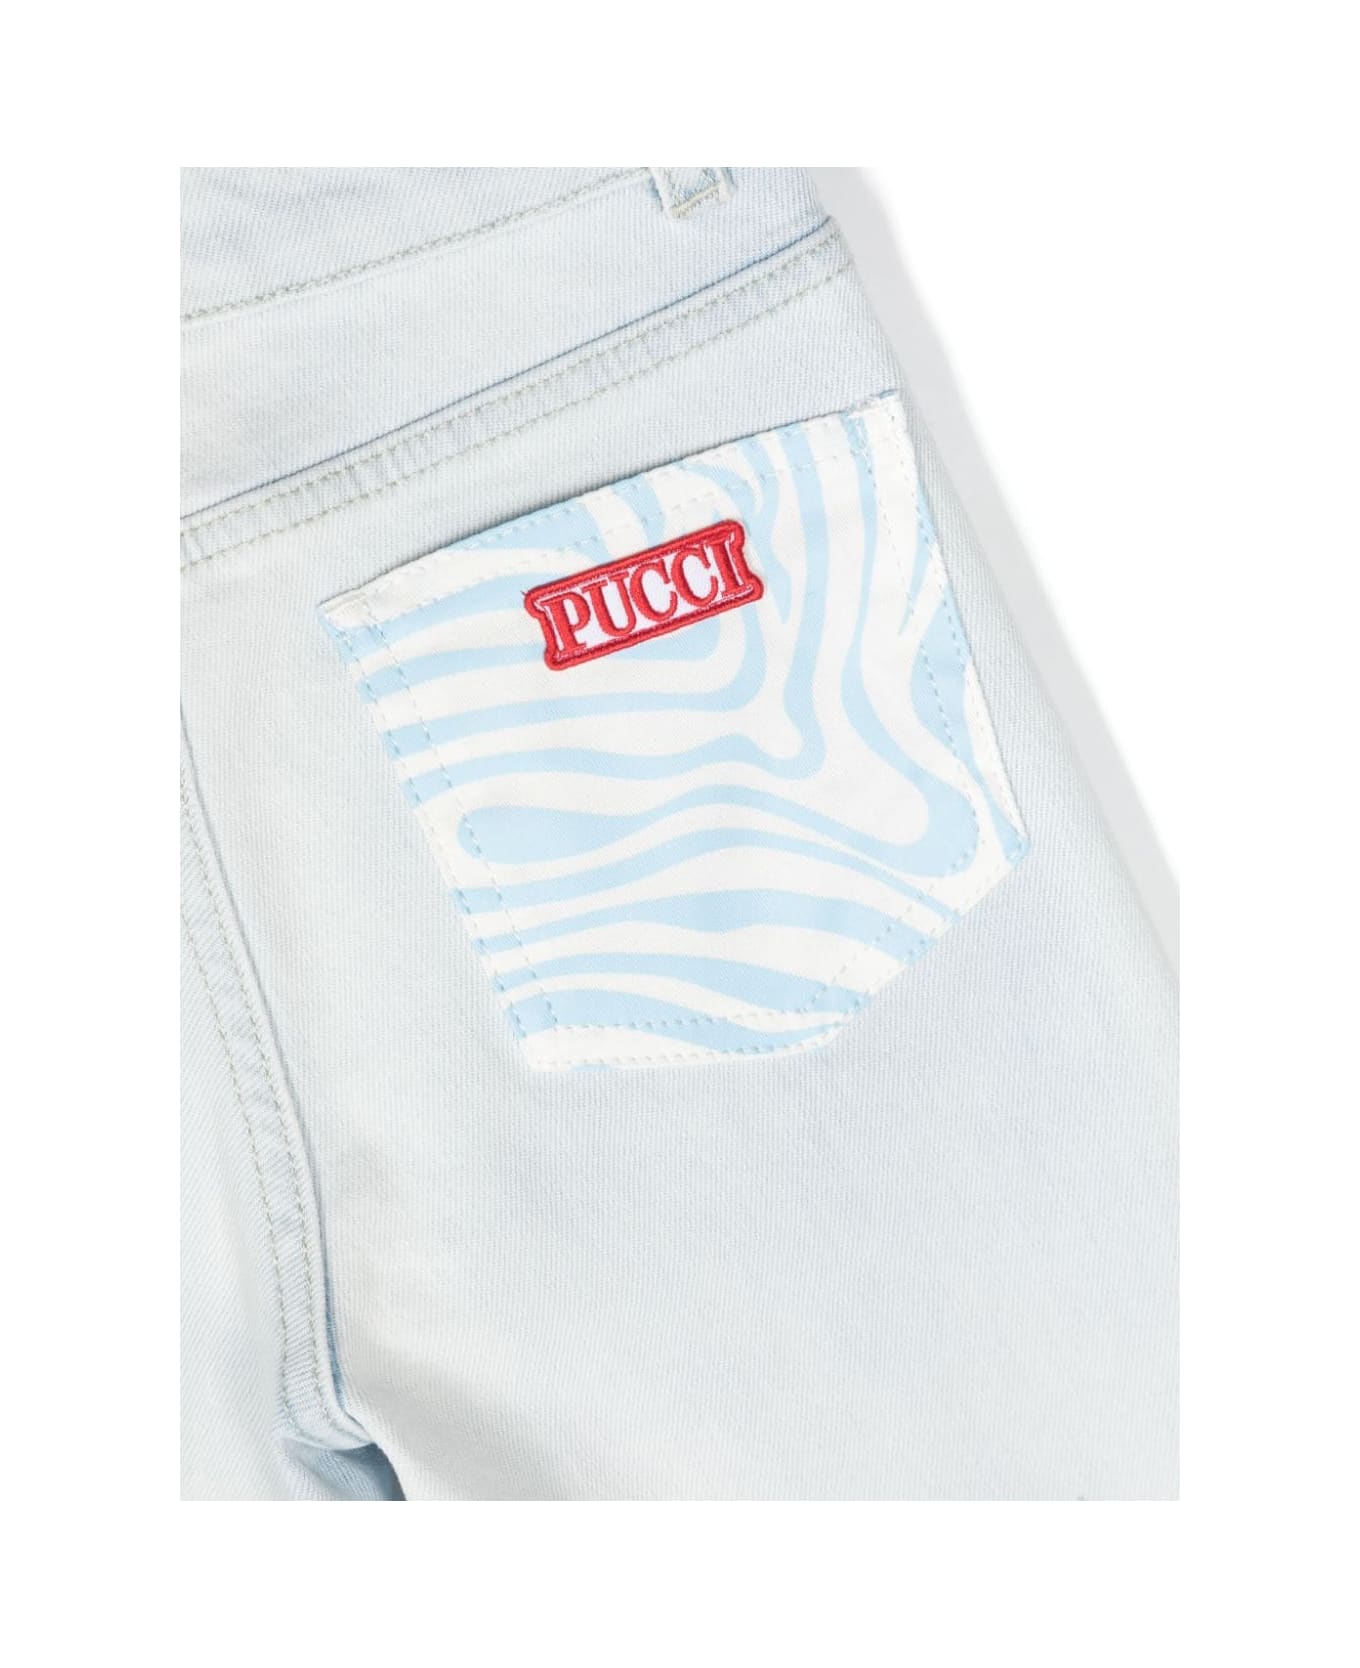 Pucci Jeans Con Applicazione - Light blue ボトムス